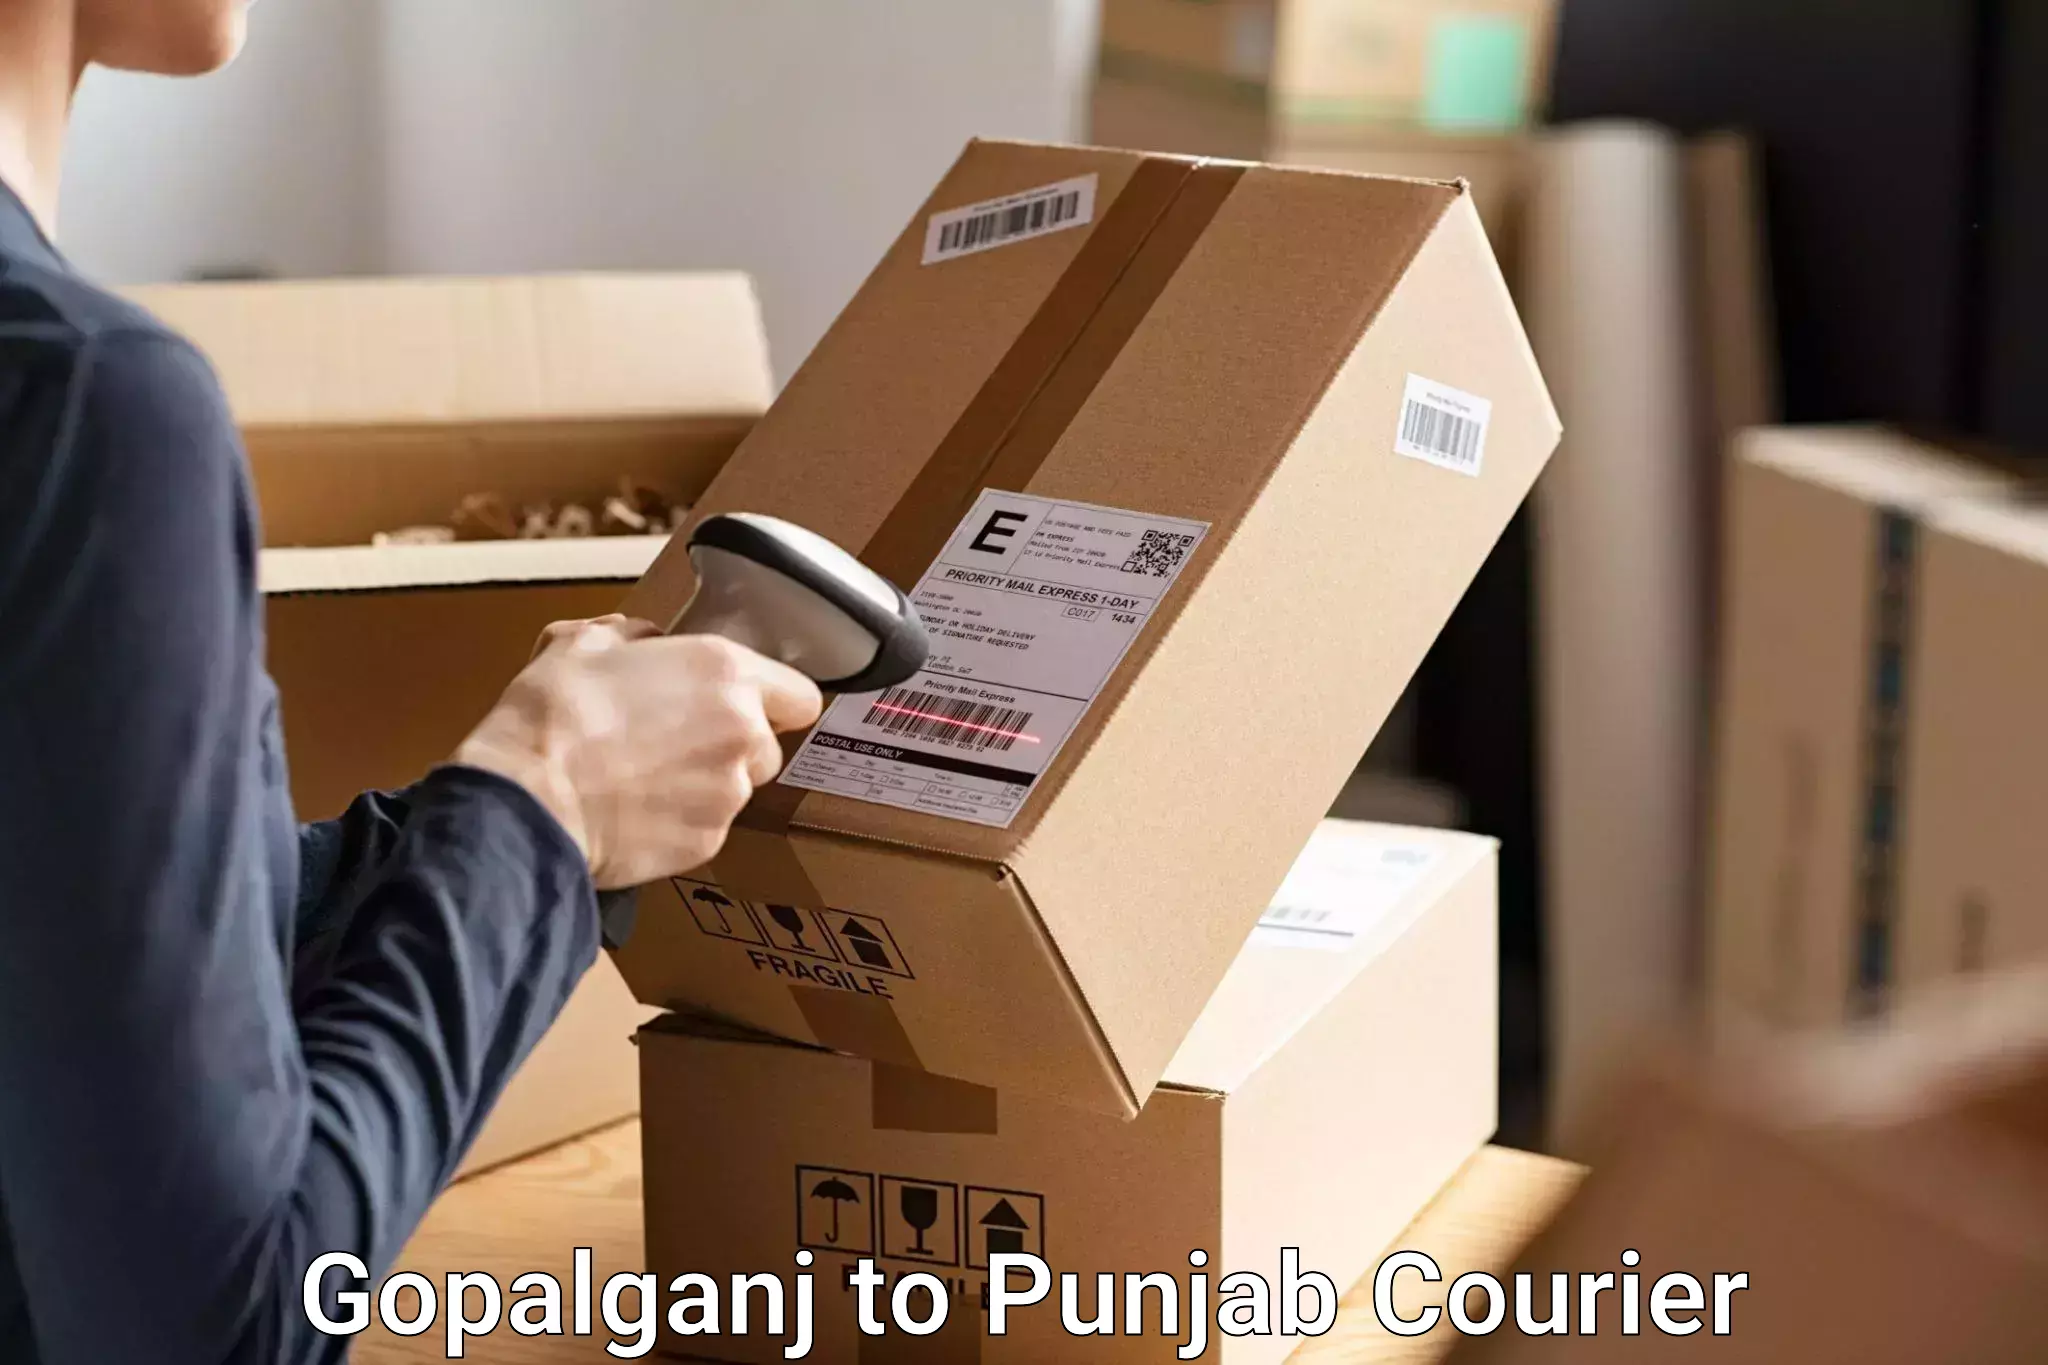 Personalized luggage shipping Gopalganj to Punjab